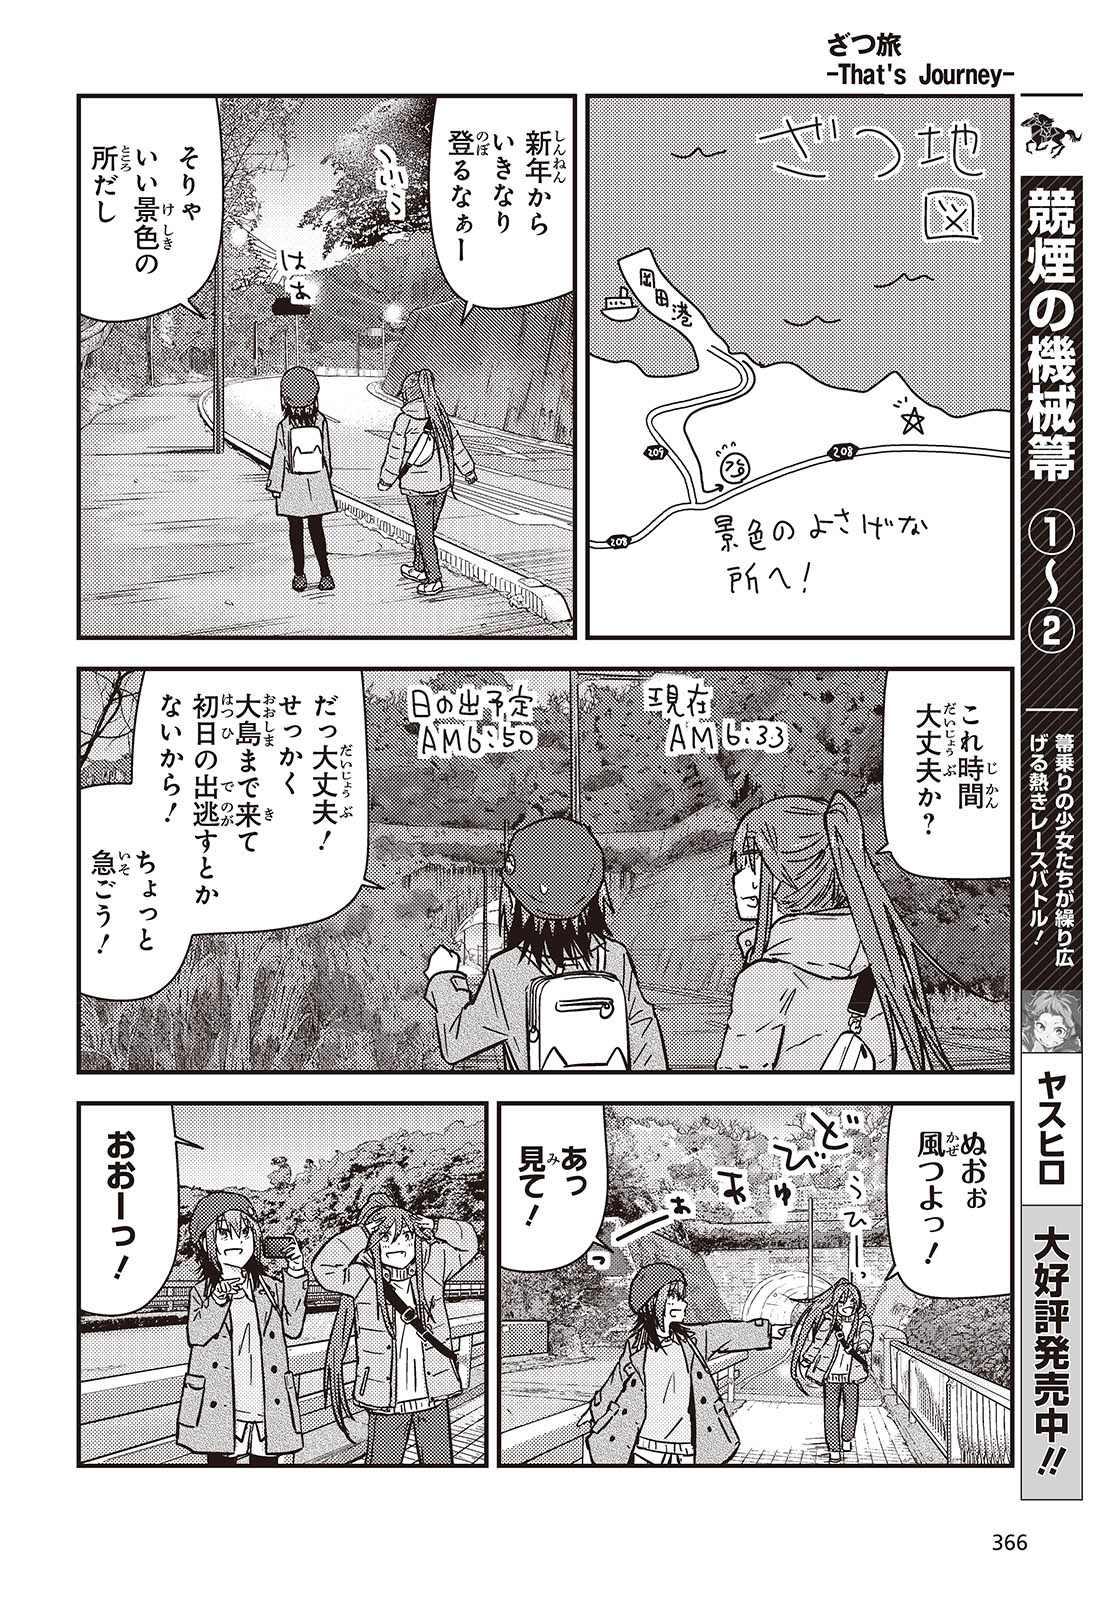 ざつ旅-That's Journey- 第37話 - Page 10